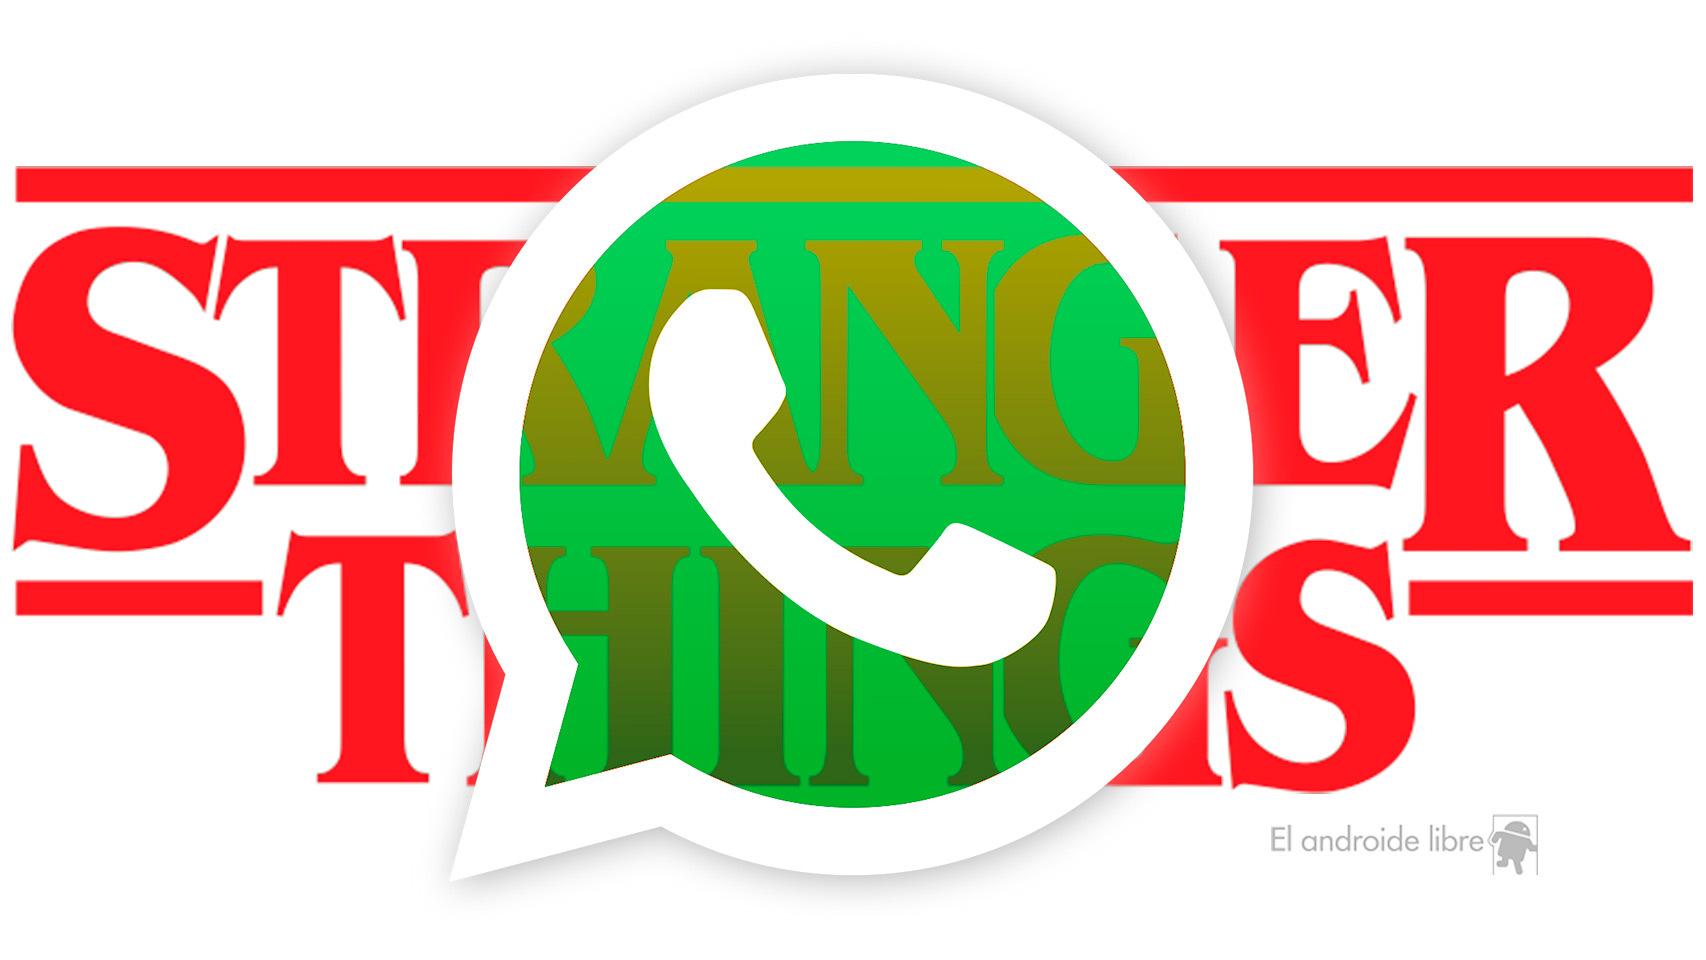 Descarga los Stickers de WhatsApp de Stranger Things